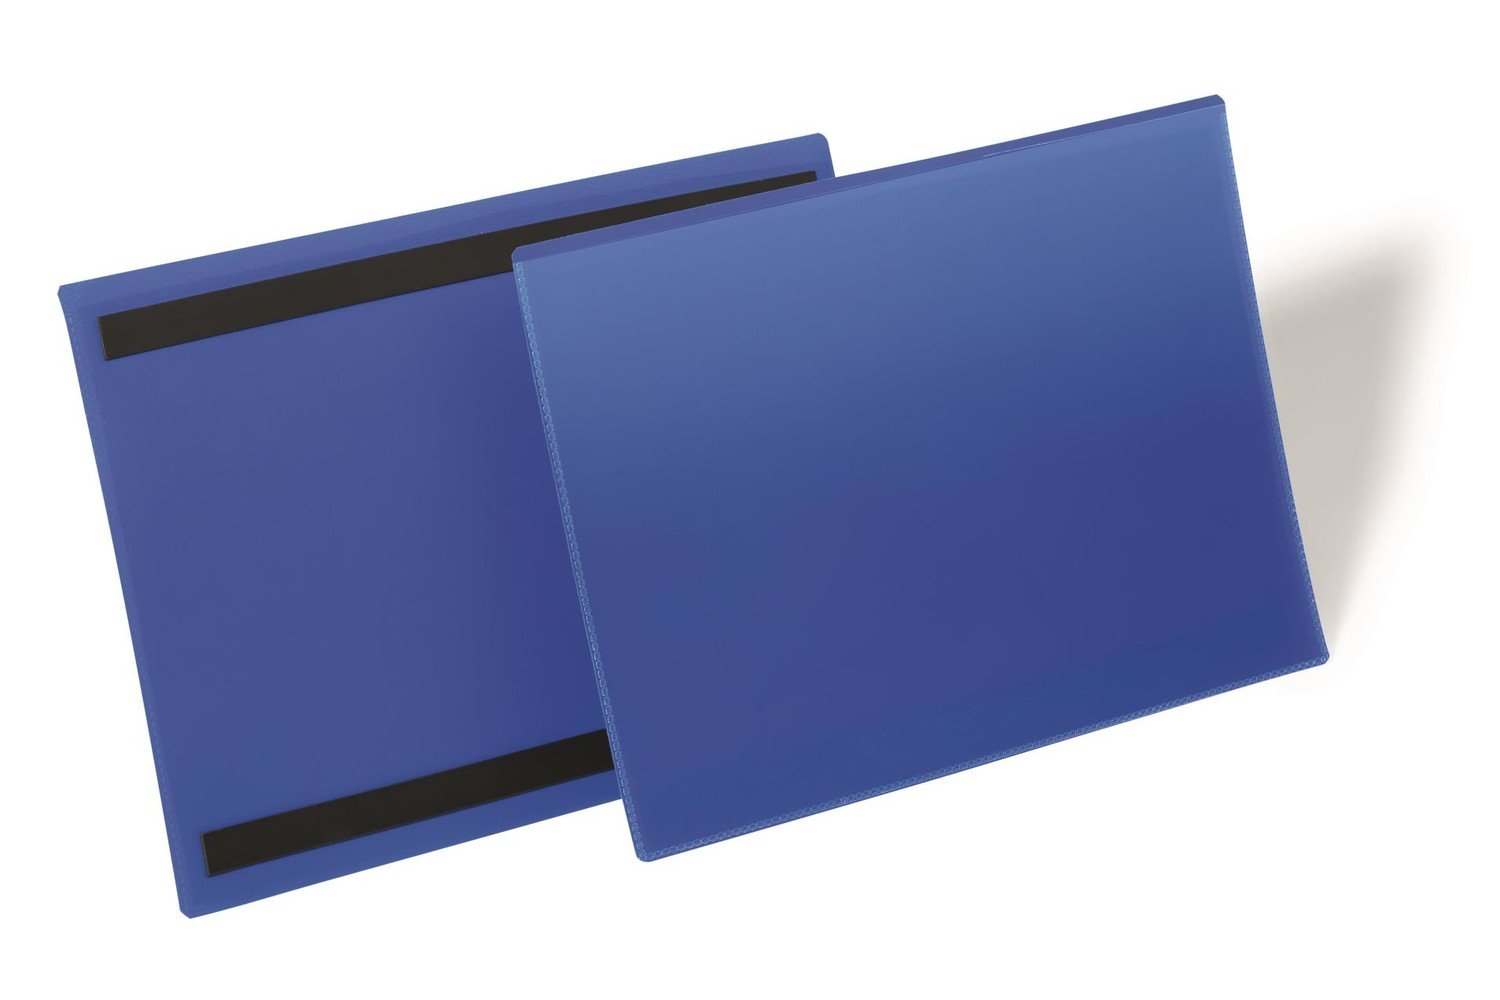 Durable Magnetická logistická kapsa na etikety, vel. A4, modrá, na šířku, 50 ks